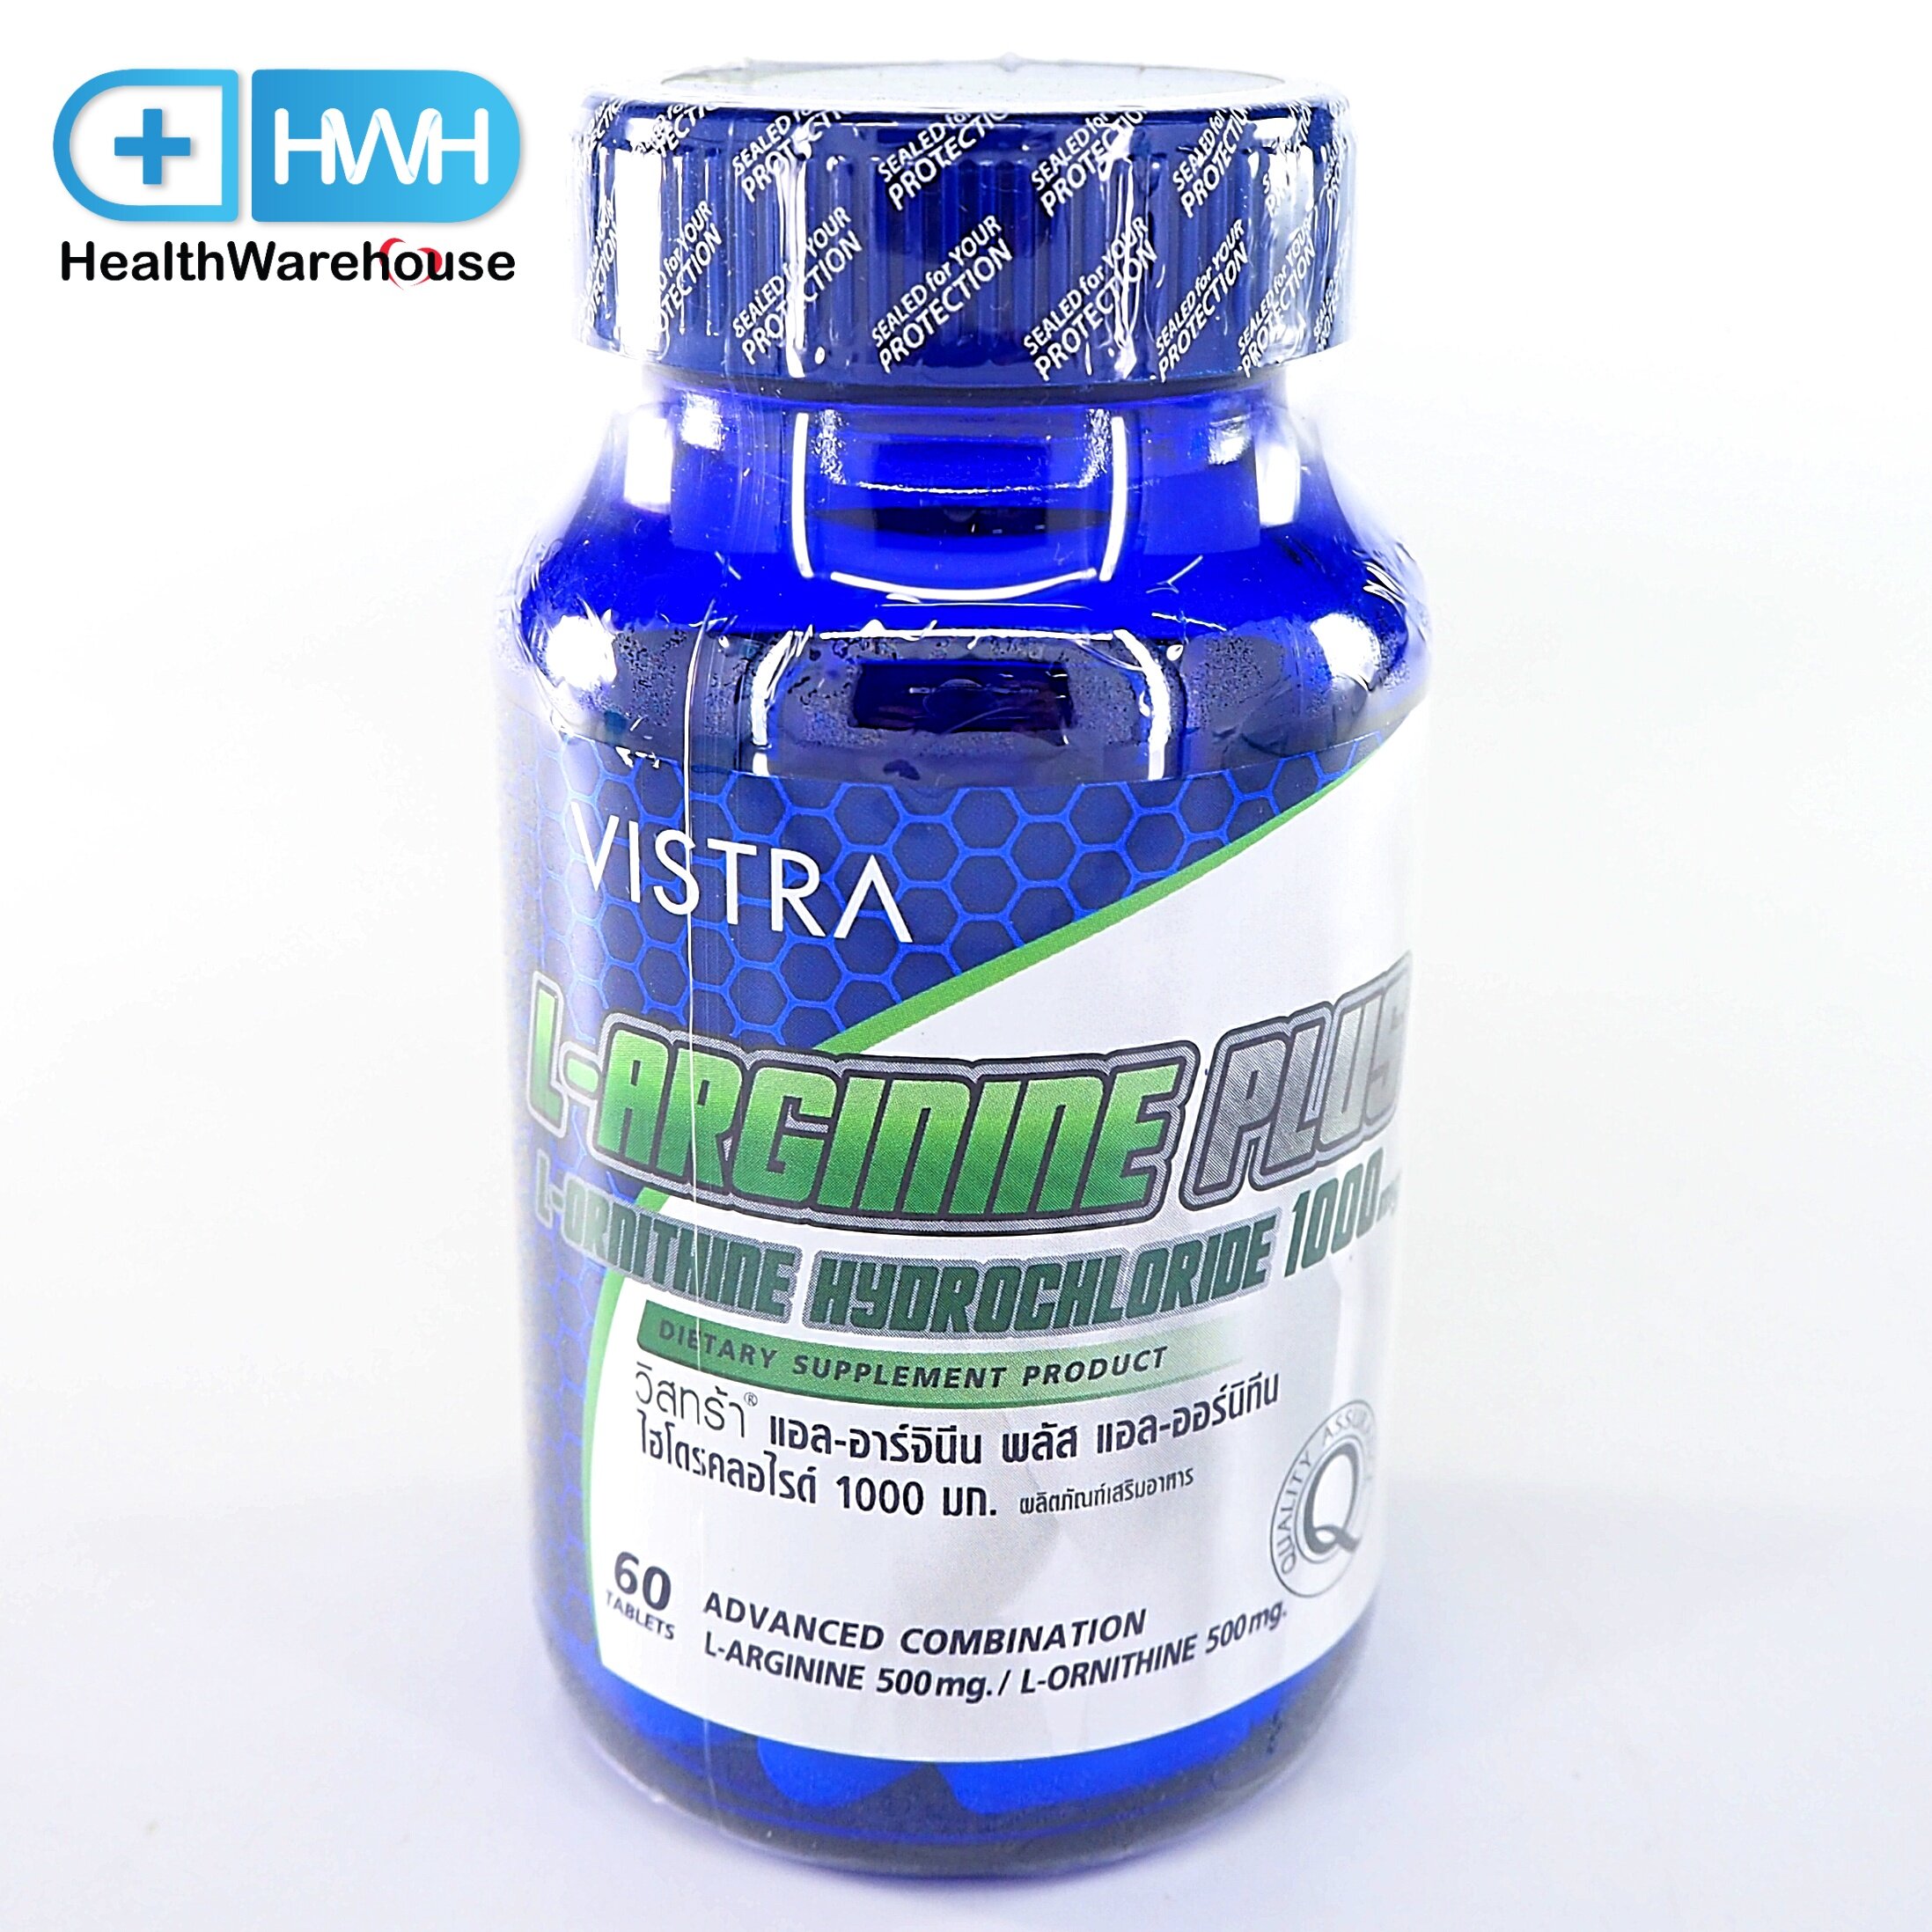 Vistra L-Arginine Plus L-Ornithine Hydrochloride 1000mg (60เม็ด) วิสทร้า แอล อาร์จินีน พลัส แอล-ออร์นิทีน ไฮโดรคลอไรด์ 1000mg (60เม็ด)